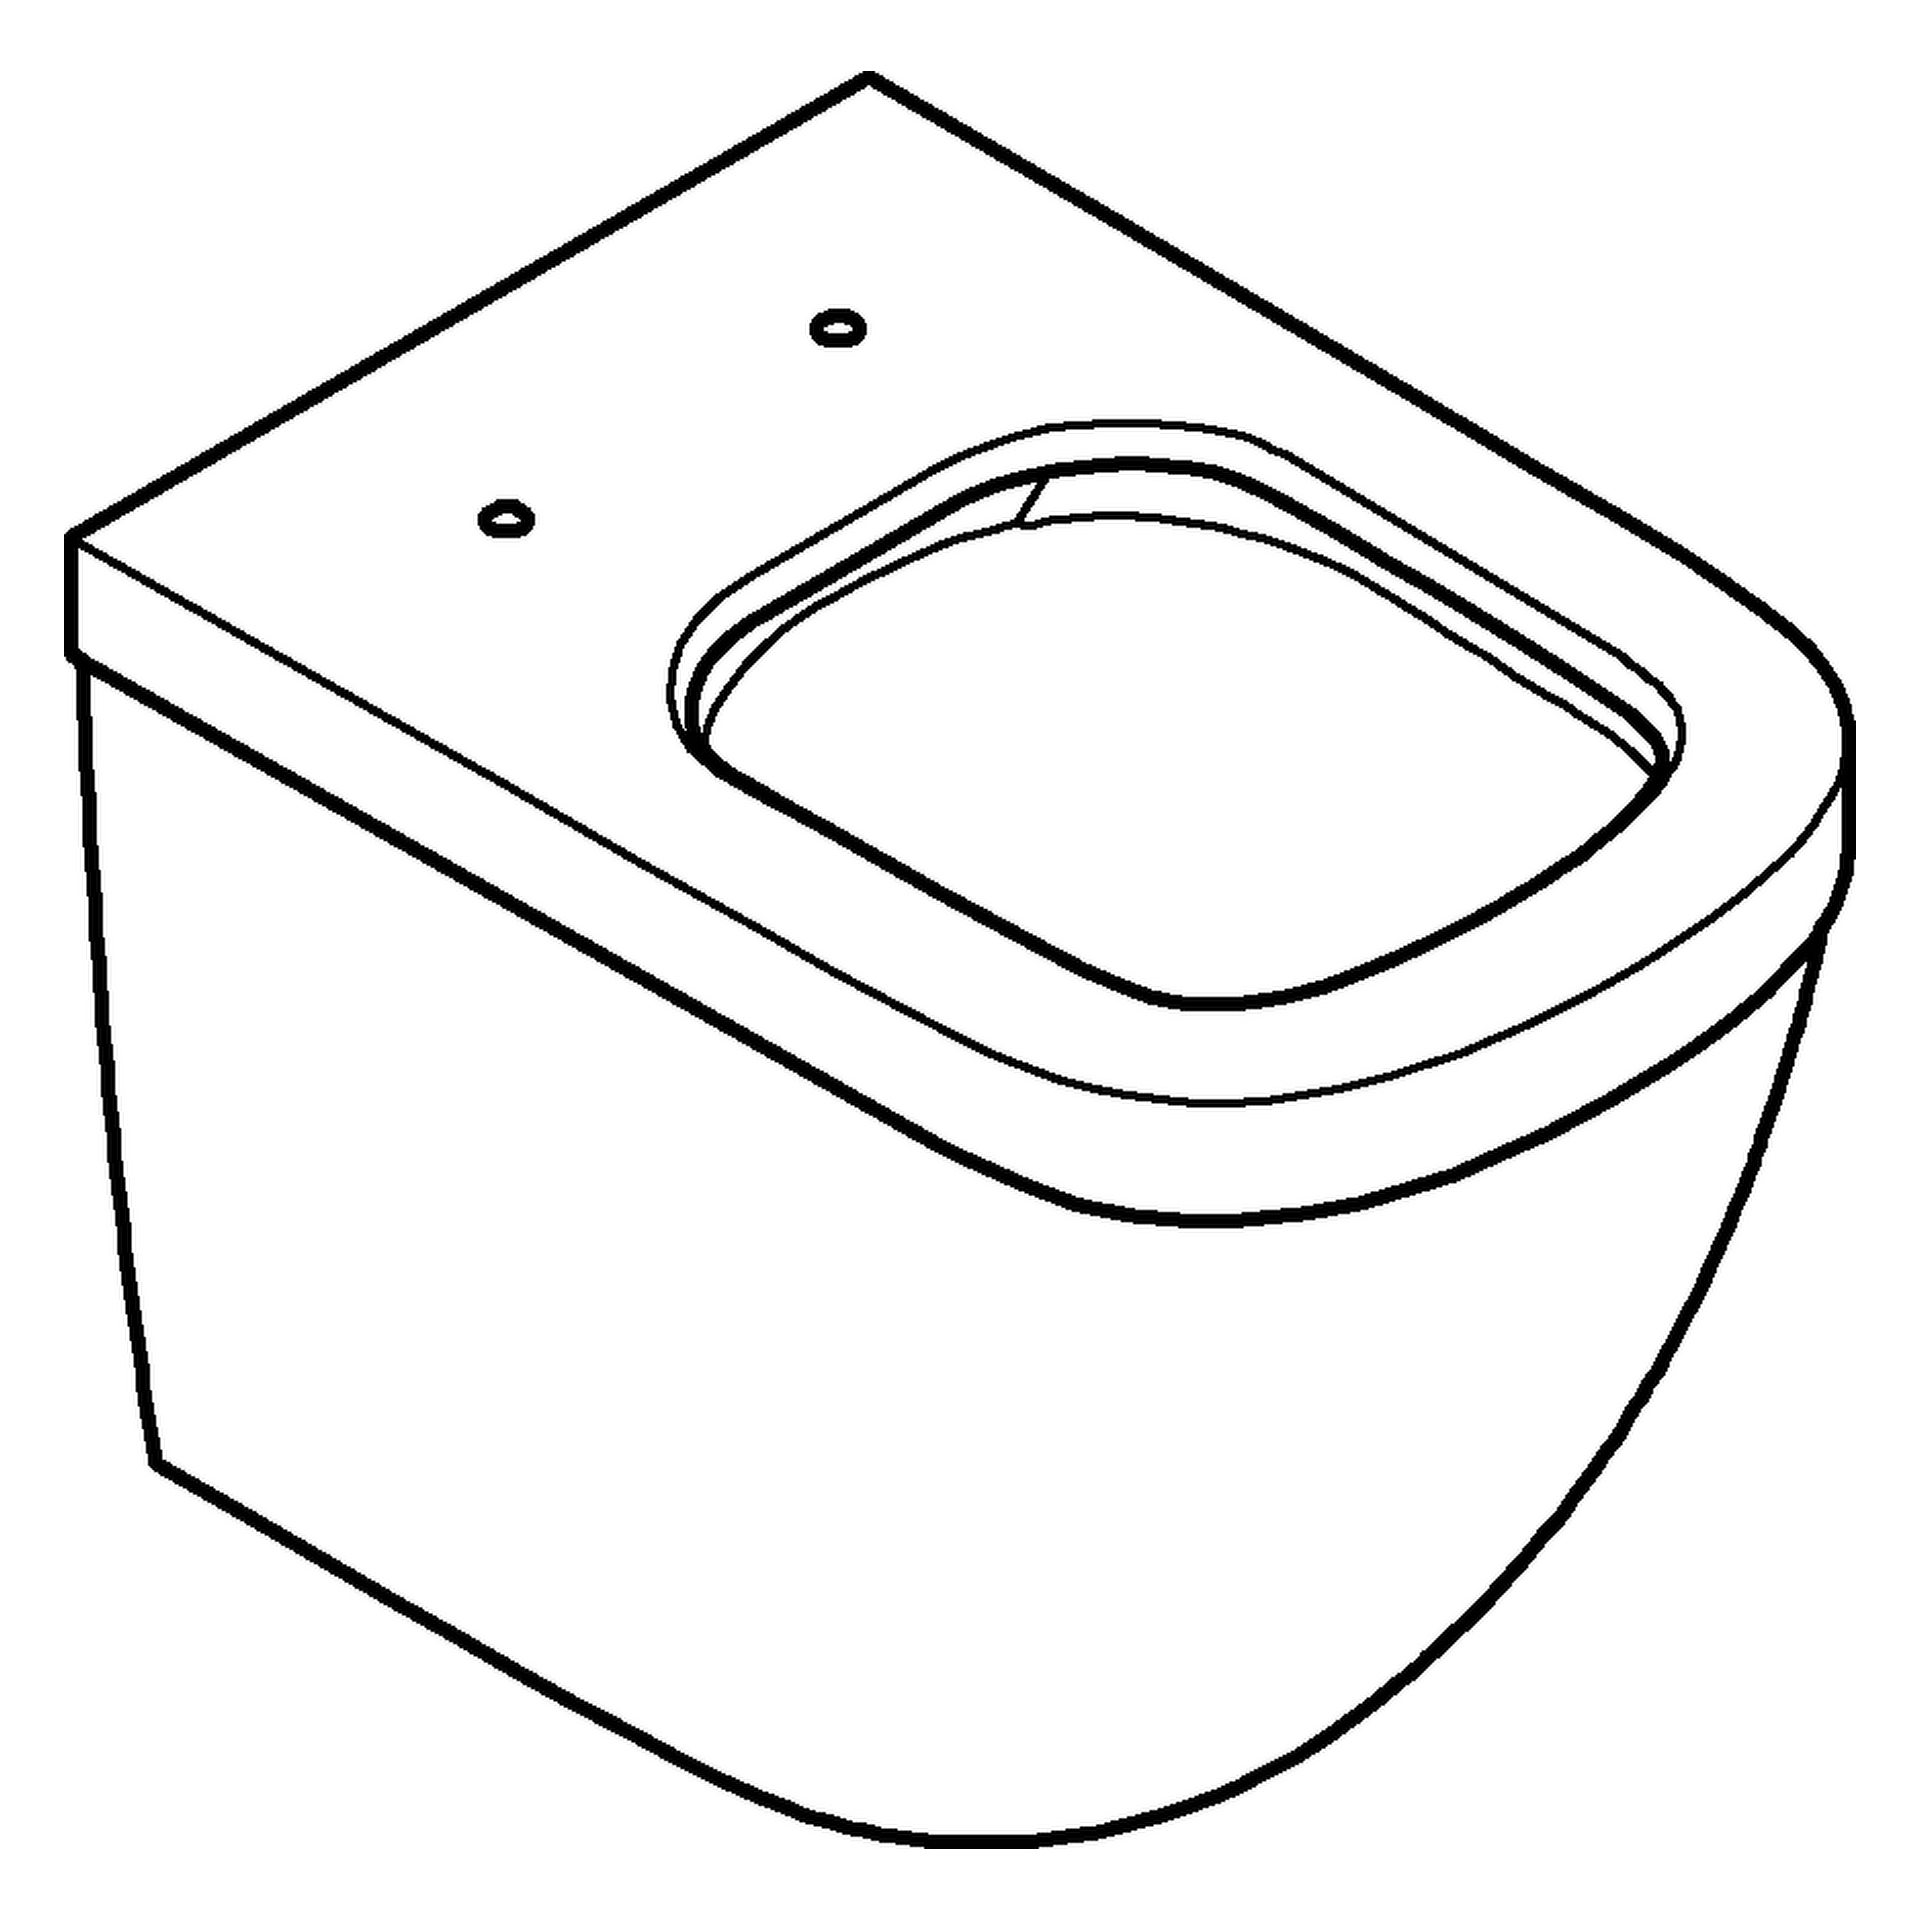 Stand-Tiefspül-WC Euro Keramik 39339, Abgang waagerecht, back to wall, spülrandlos, aus Sanitärkeramik, alpinweiß